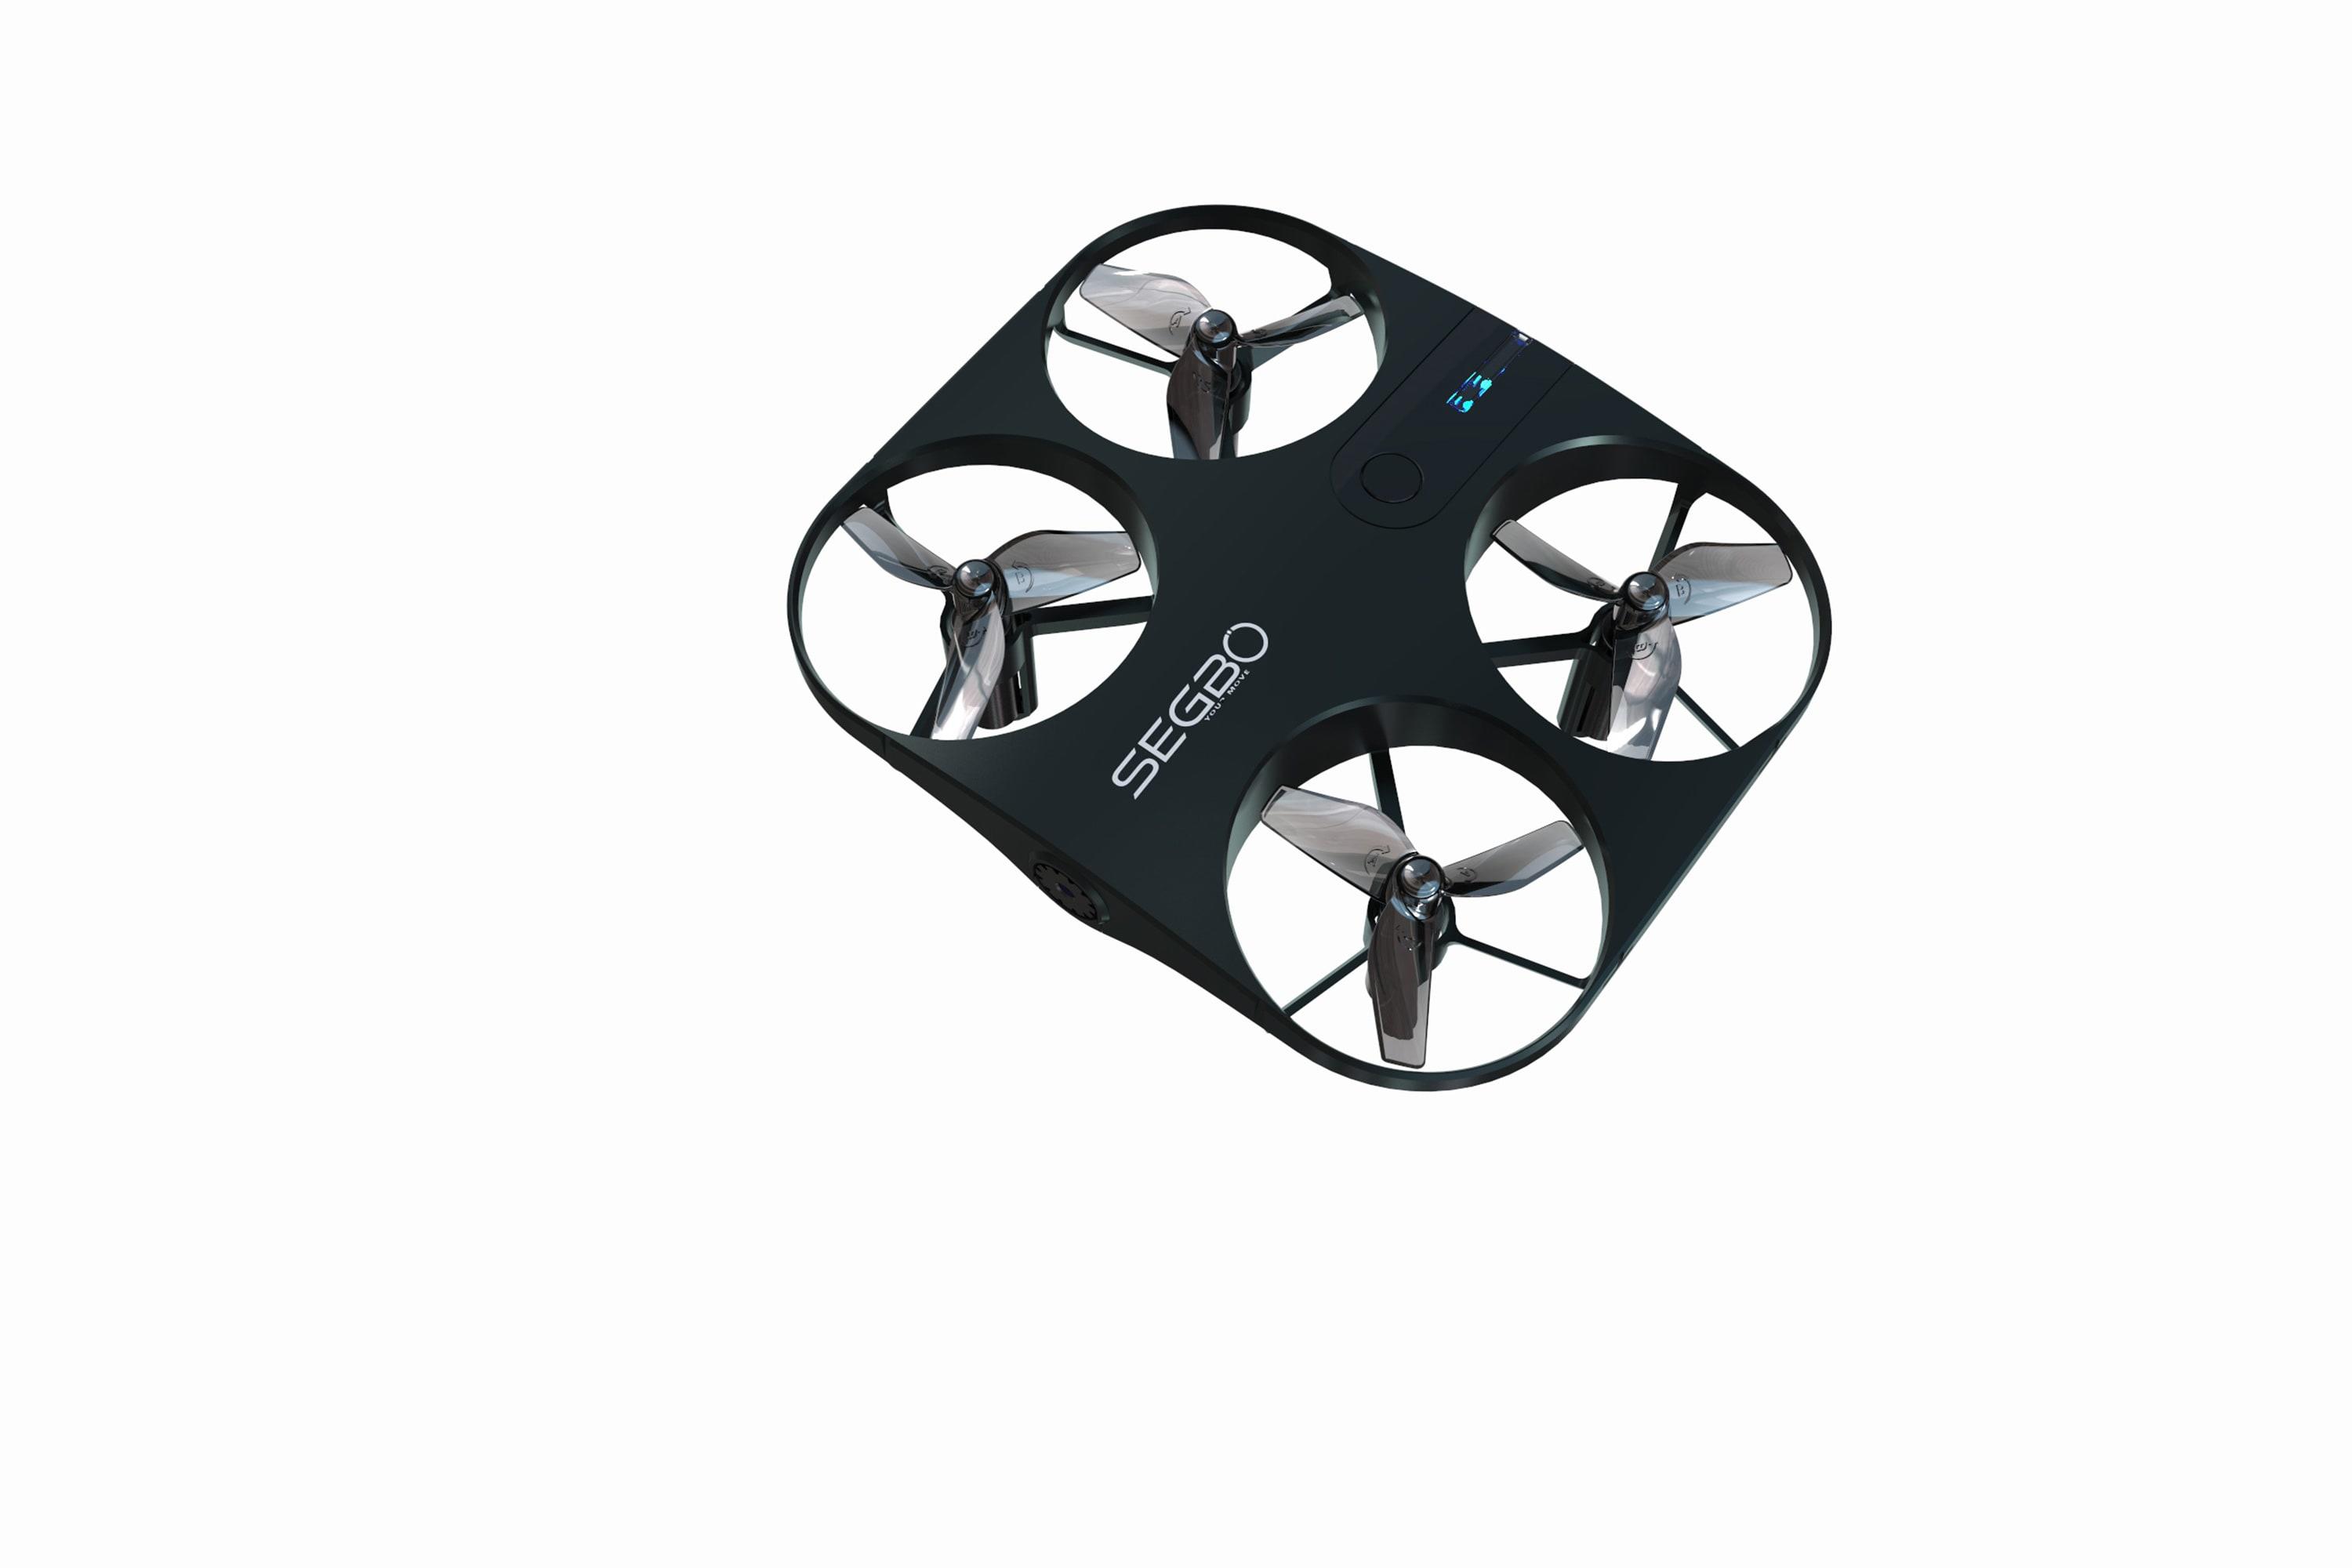 Official SEGBO Drone HD Camera